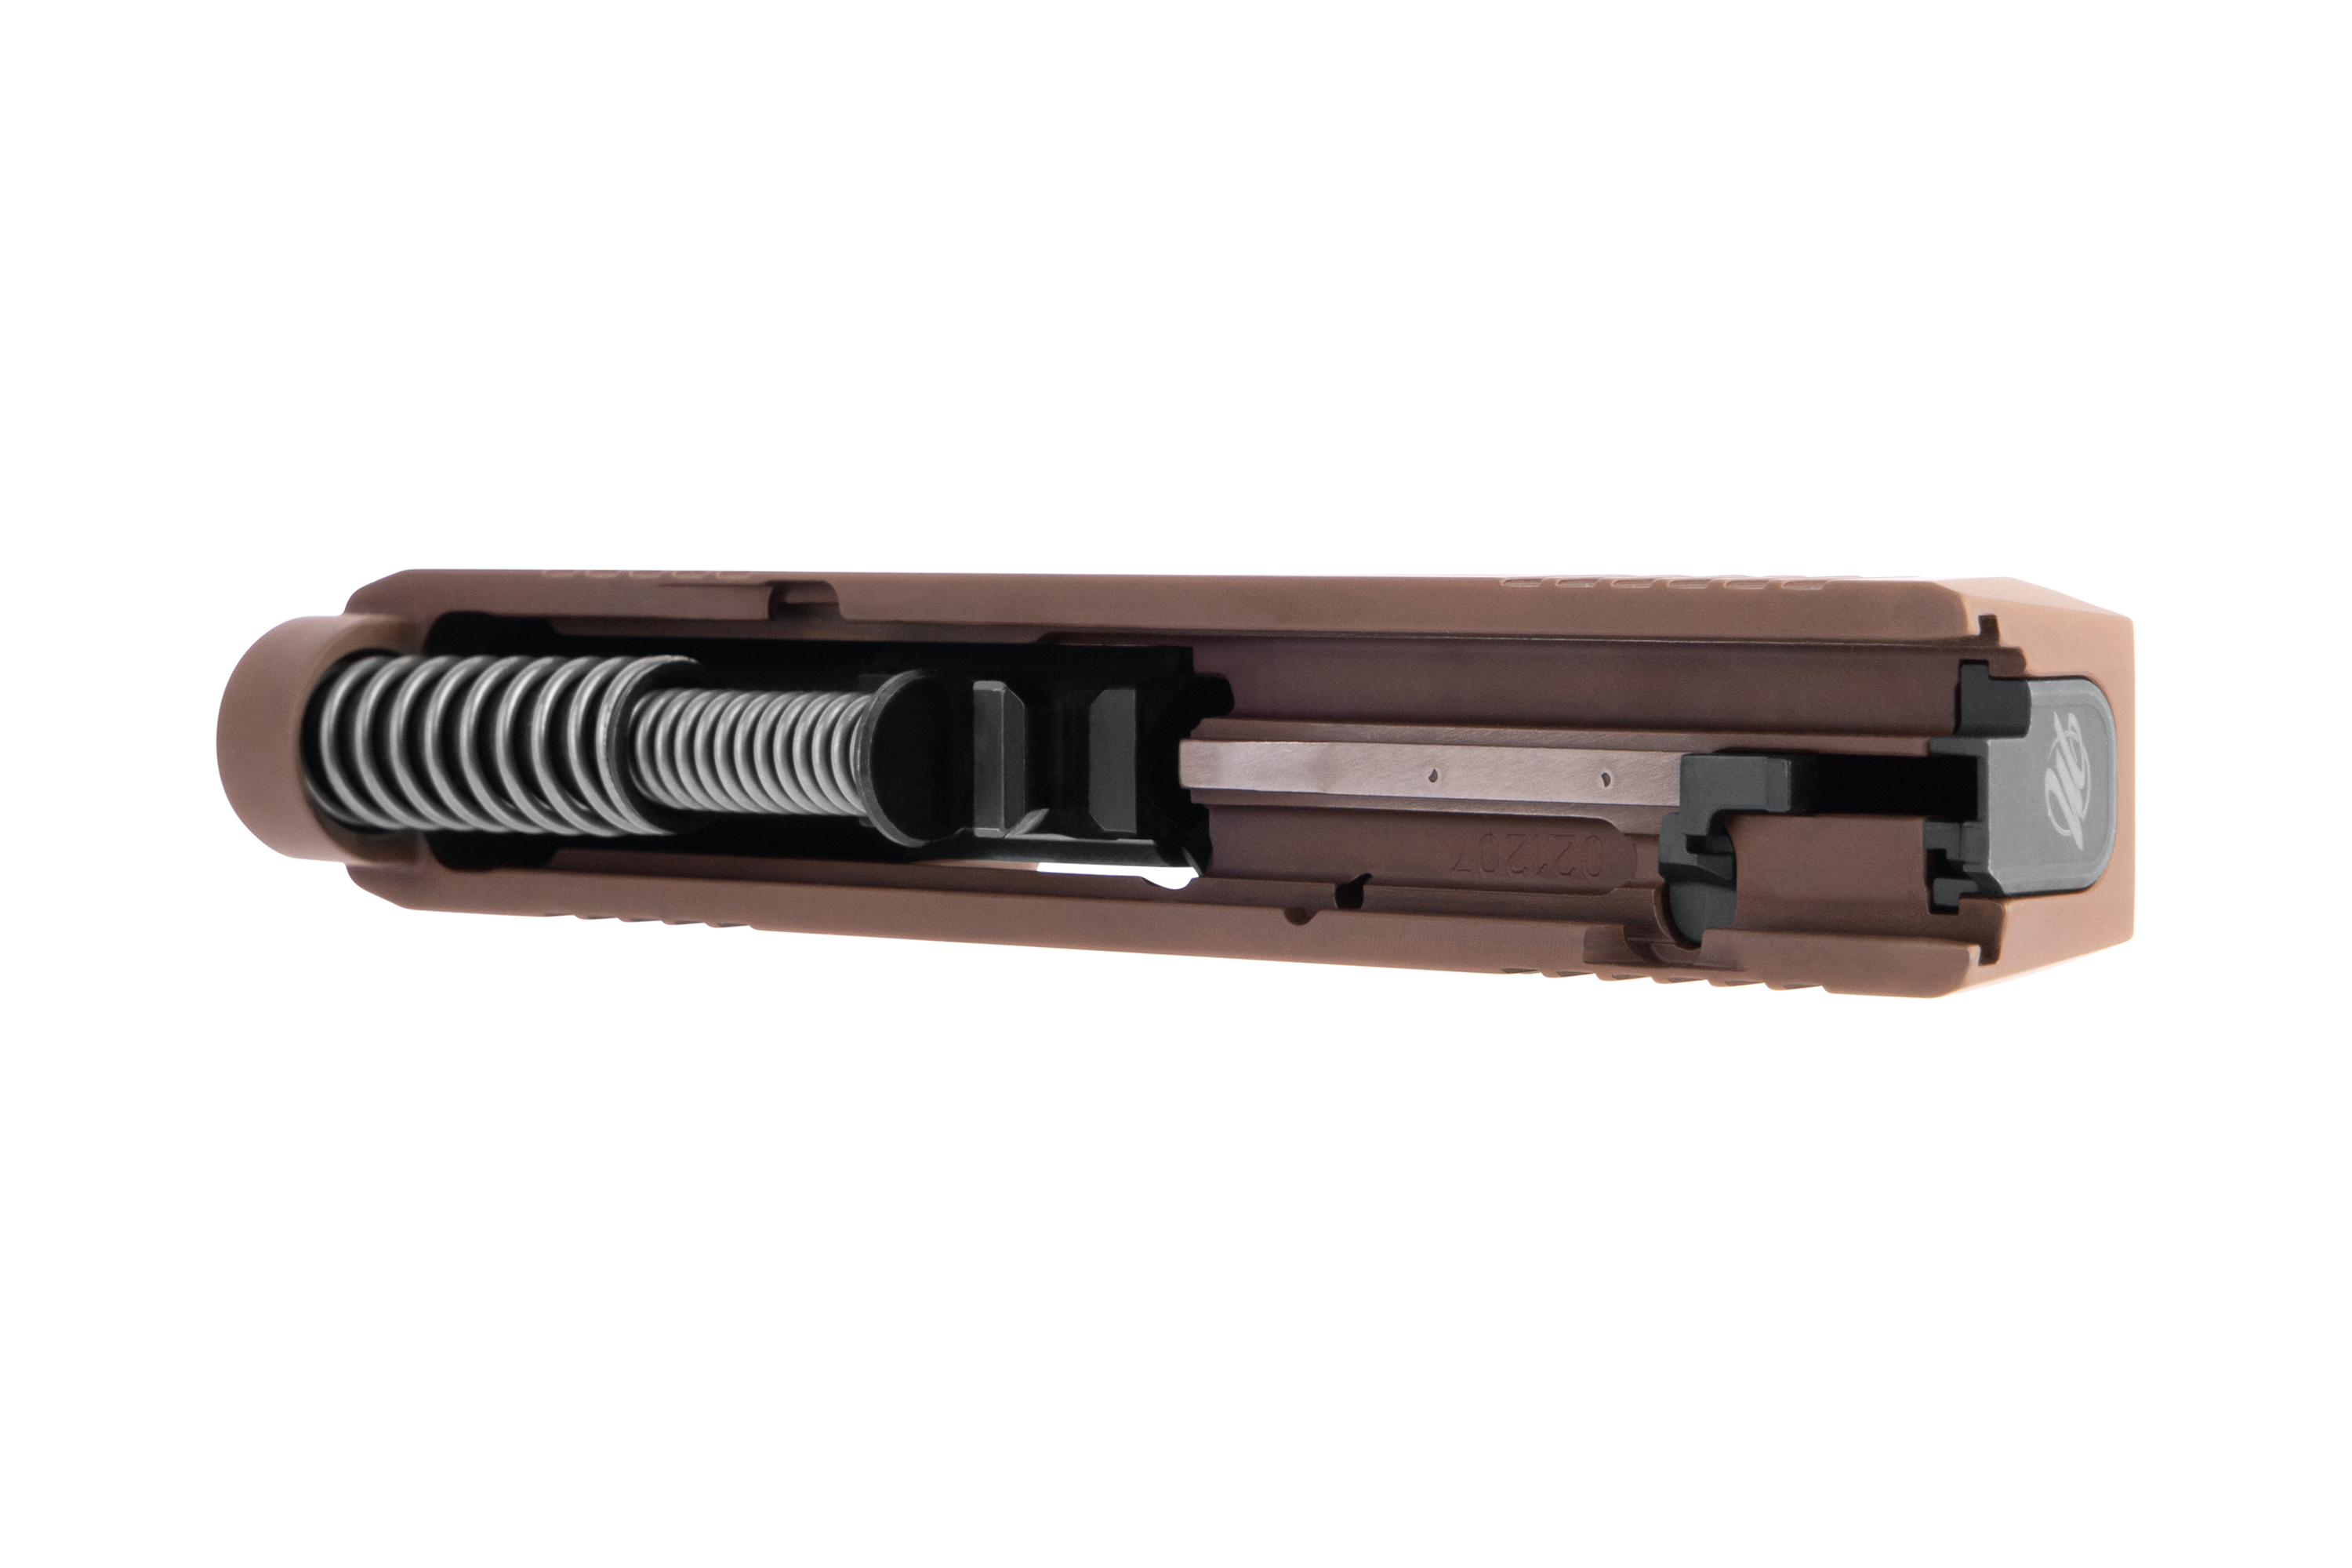 SIG SAUER P365 Wechselsystem Carcross Desert 9mm Luger - Firearms